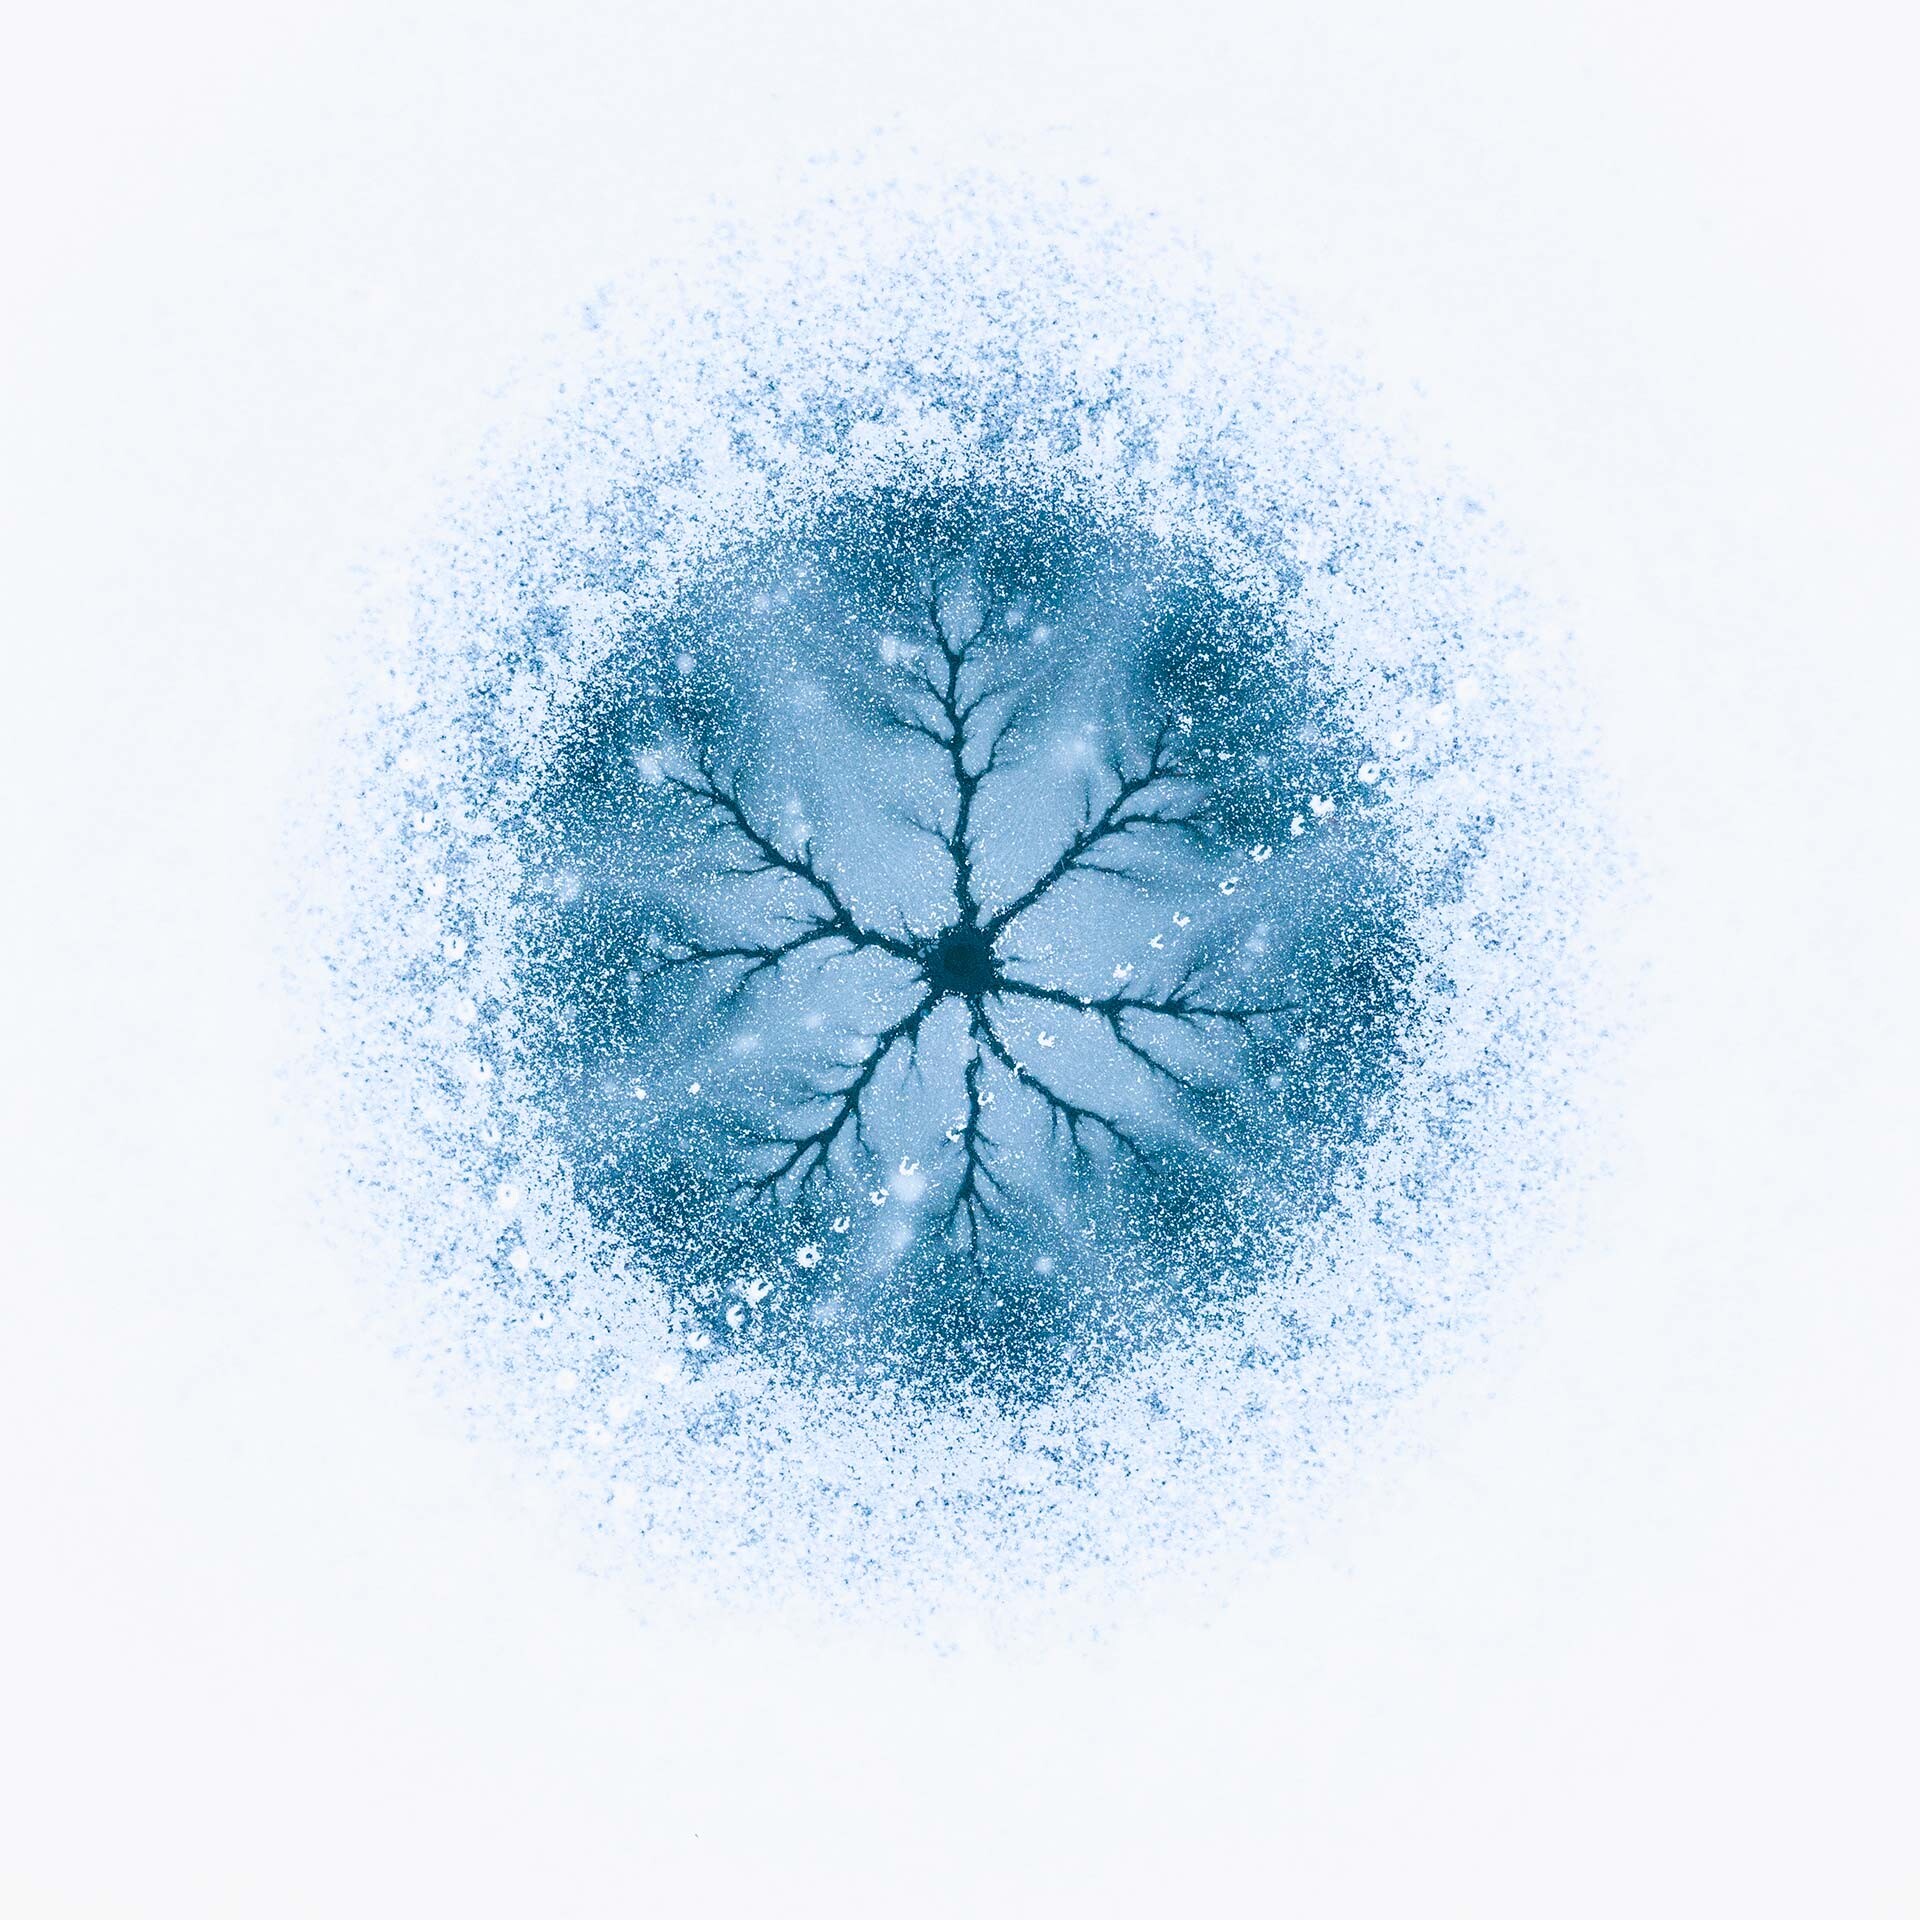 1 место в категории Искусство природы, 2021. Ледяная клетка. Фото с воздуха над зимним озером Куэйдель в Румынии из проекта Анатомия льда. Автор Георге Попа